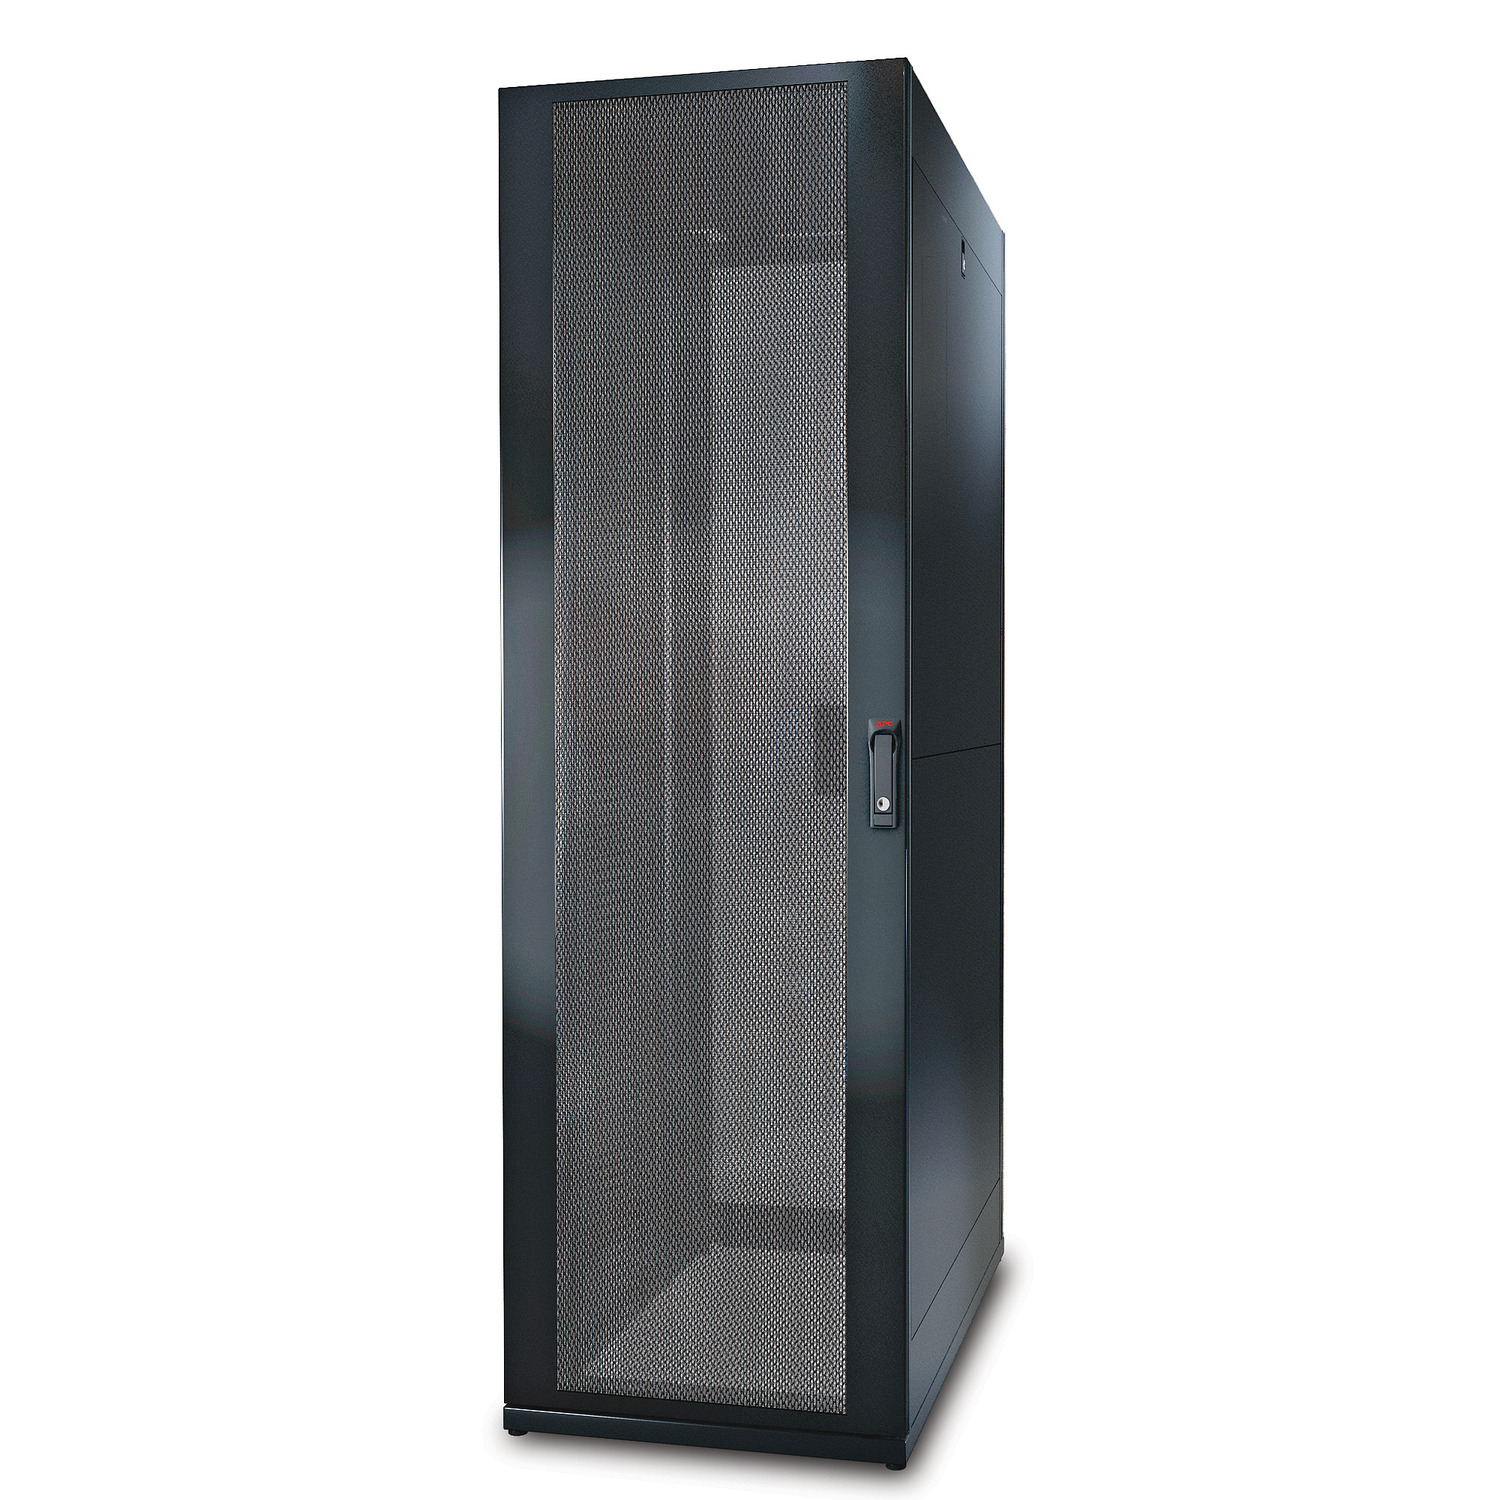 Шкаф NETSHELTER SX 42u 600mm x 1070mm с одинарными боковыми дверками